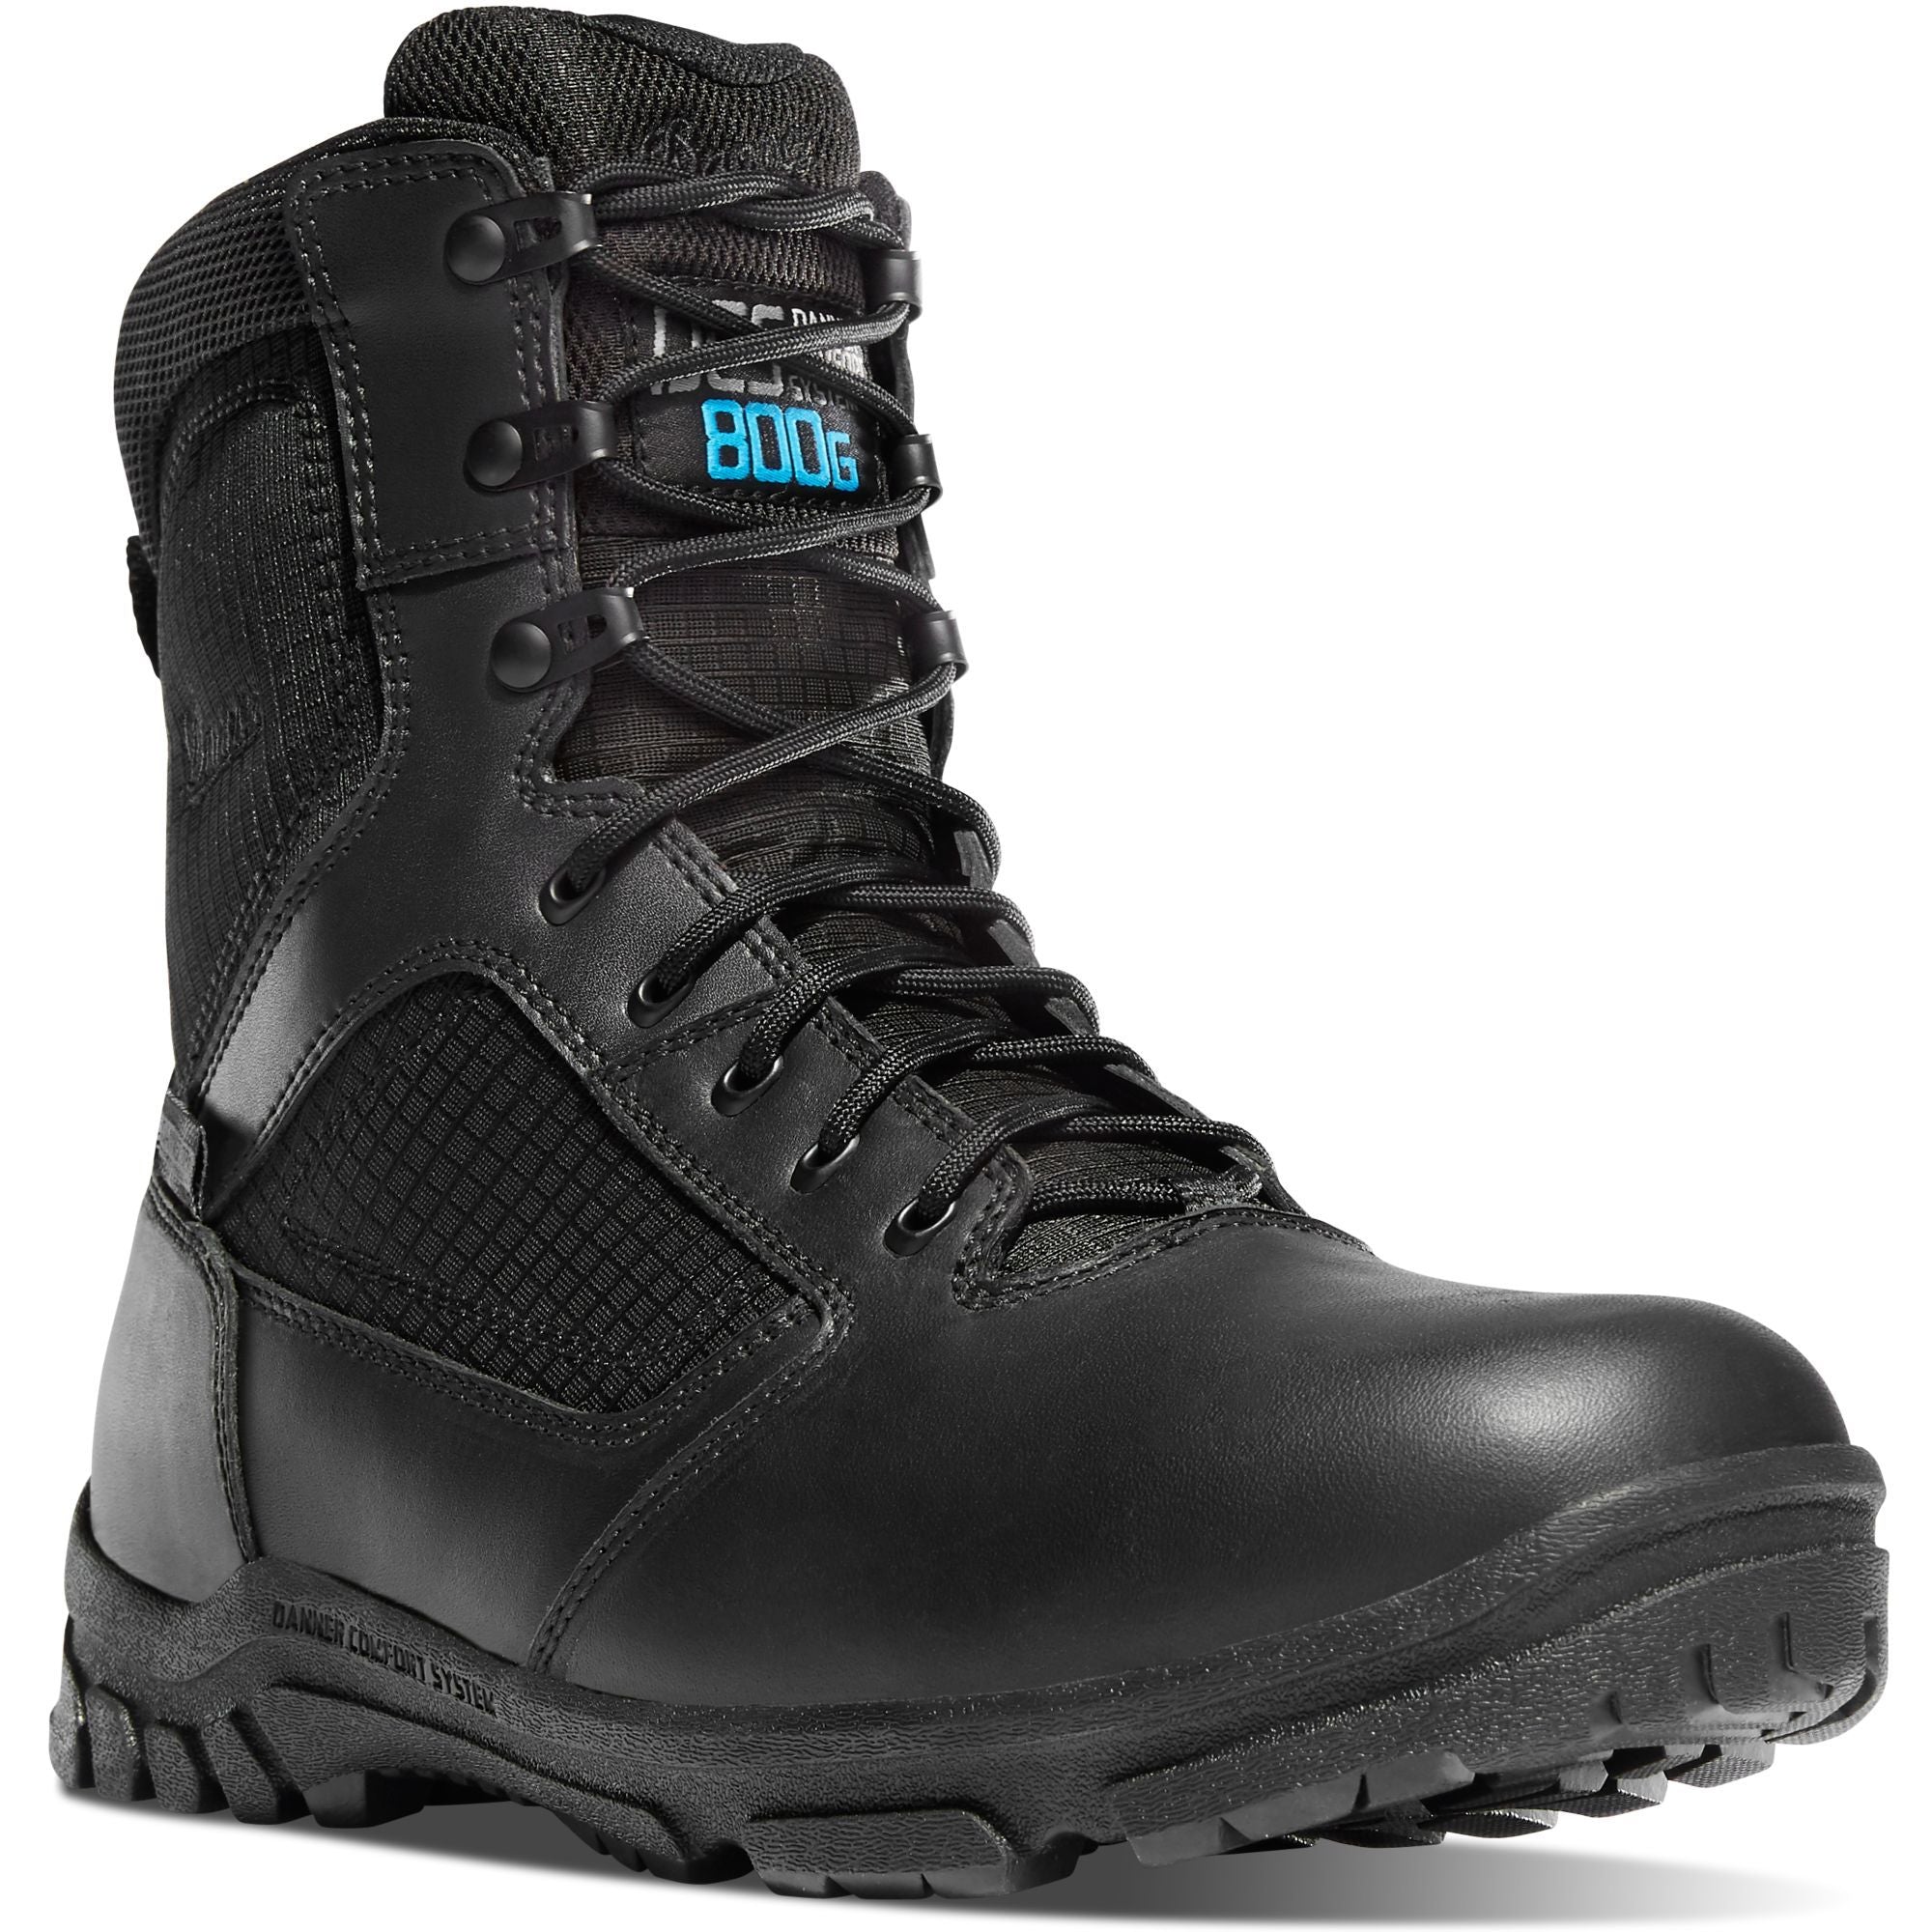 Danner Men's Lookout 8" Insulated Waterproof Duty Boot - Black - 23827 7 / Medium / Black - Overlook Boots